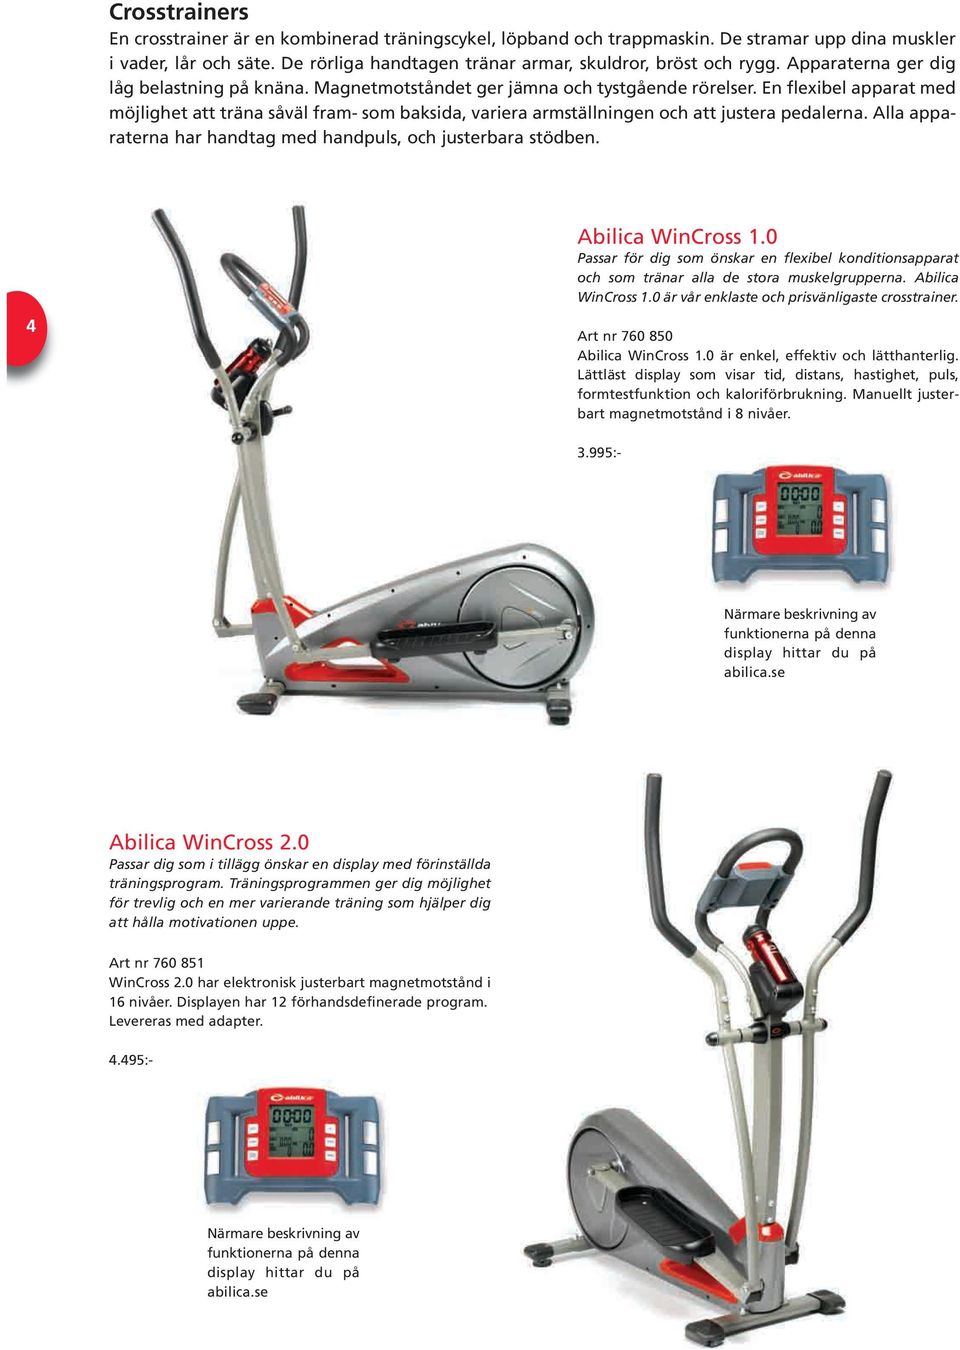 En flexibel apparat med möjlighet att träna såväl fram- som baksida, variera armställningen och att justera pedalerna. Alla apparaterna har handtag med handpuls, och justerbara stödben.